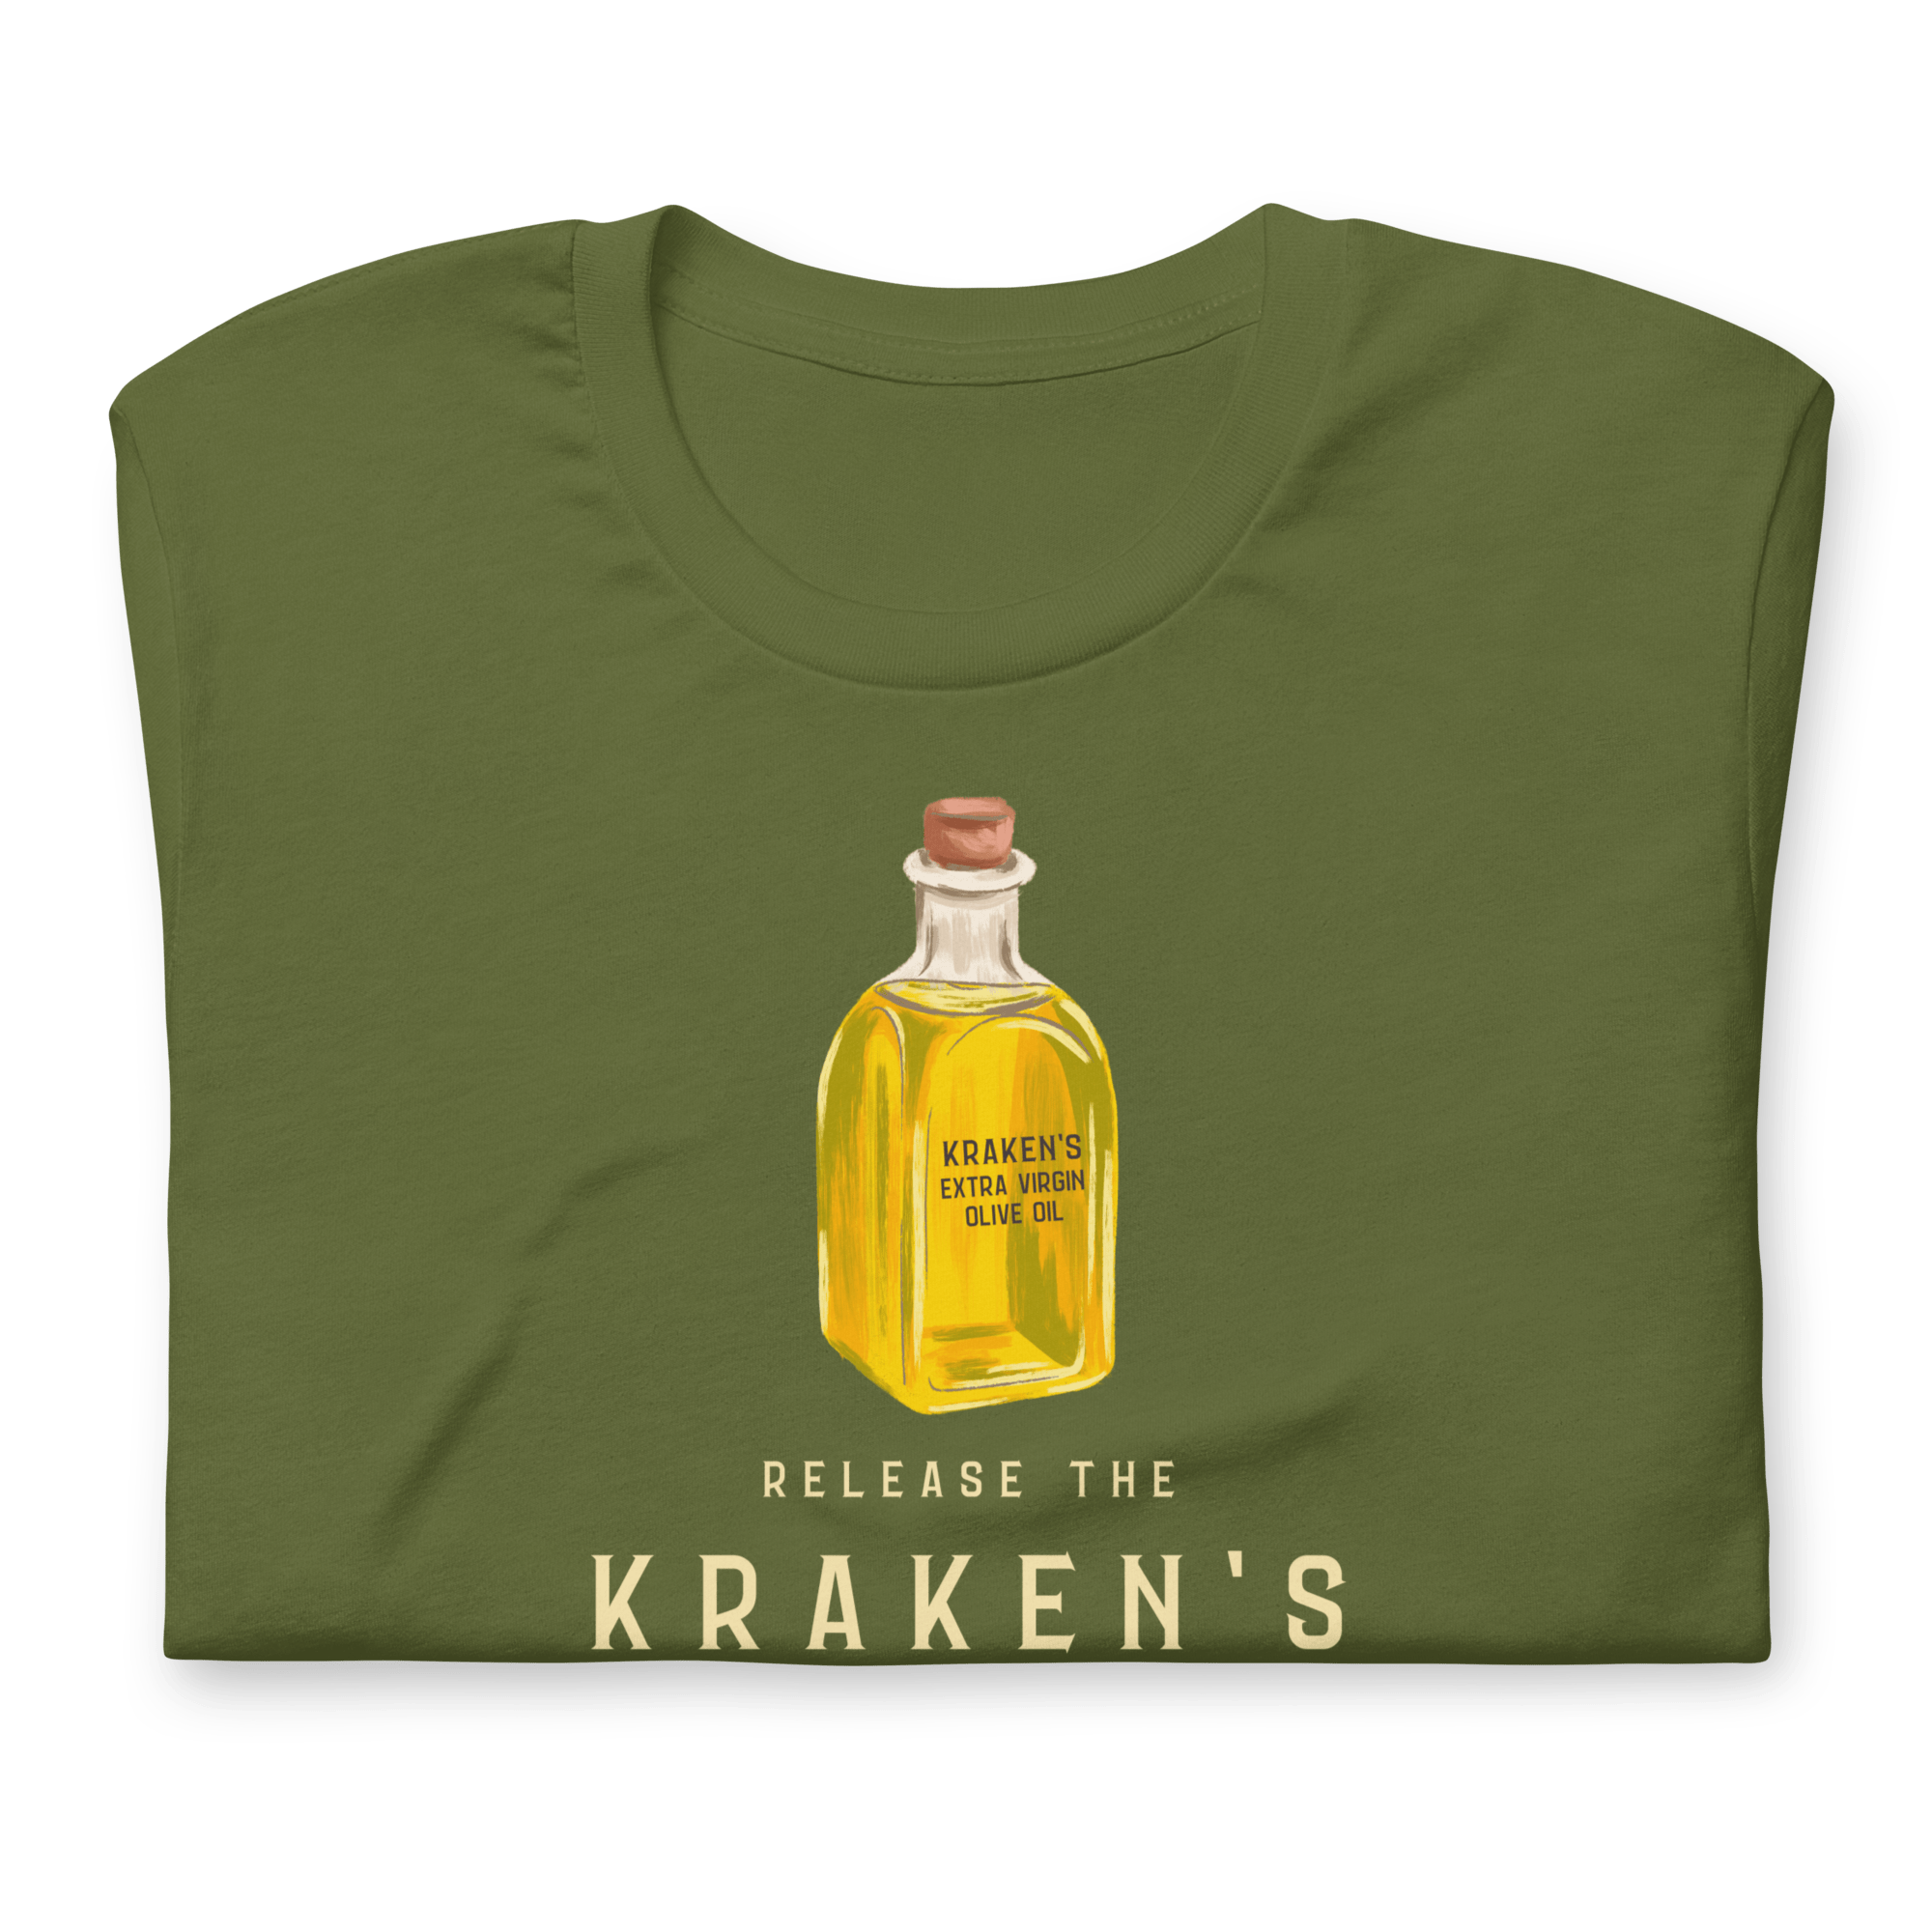 Release the Kraken's Extra Virgin Olive Oil T-shirt Jolly & Goode